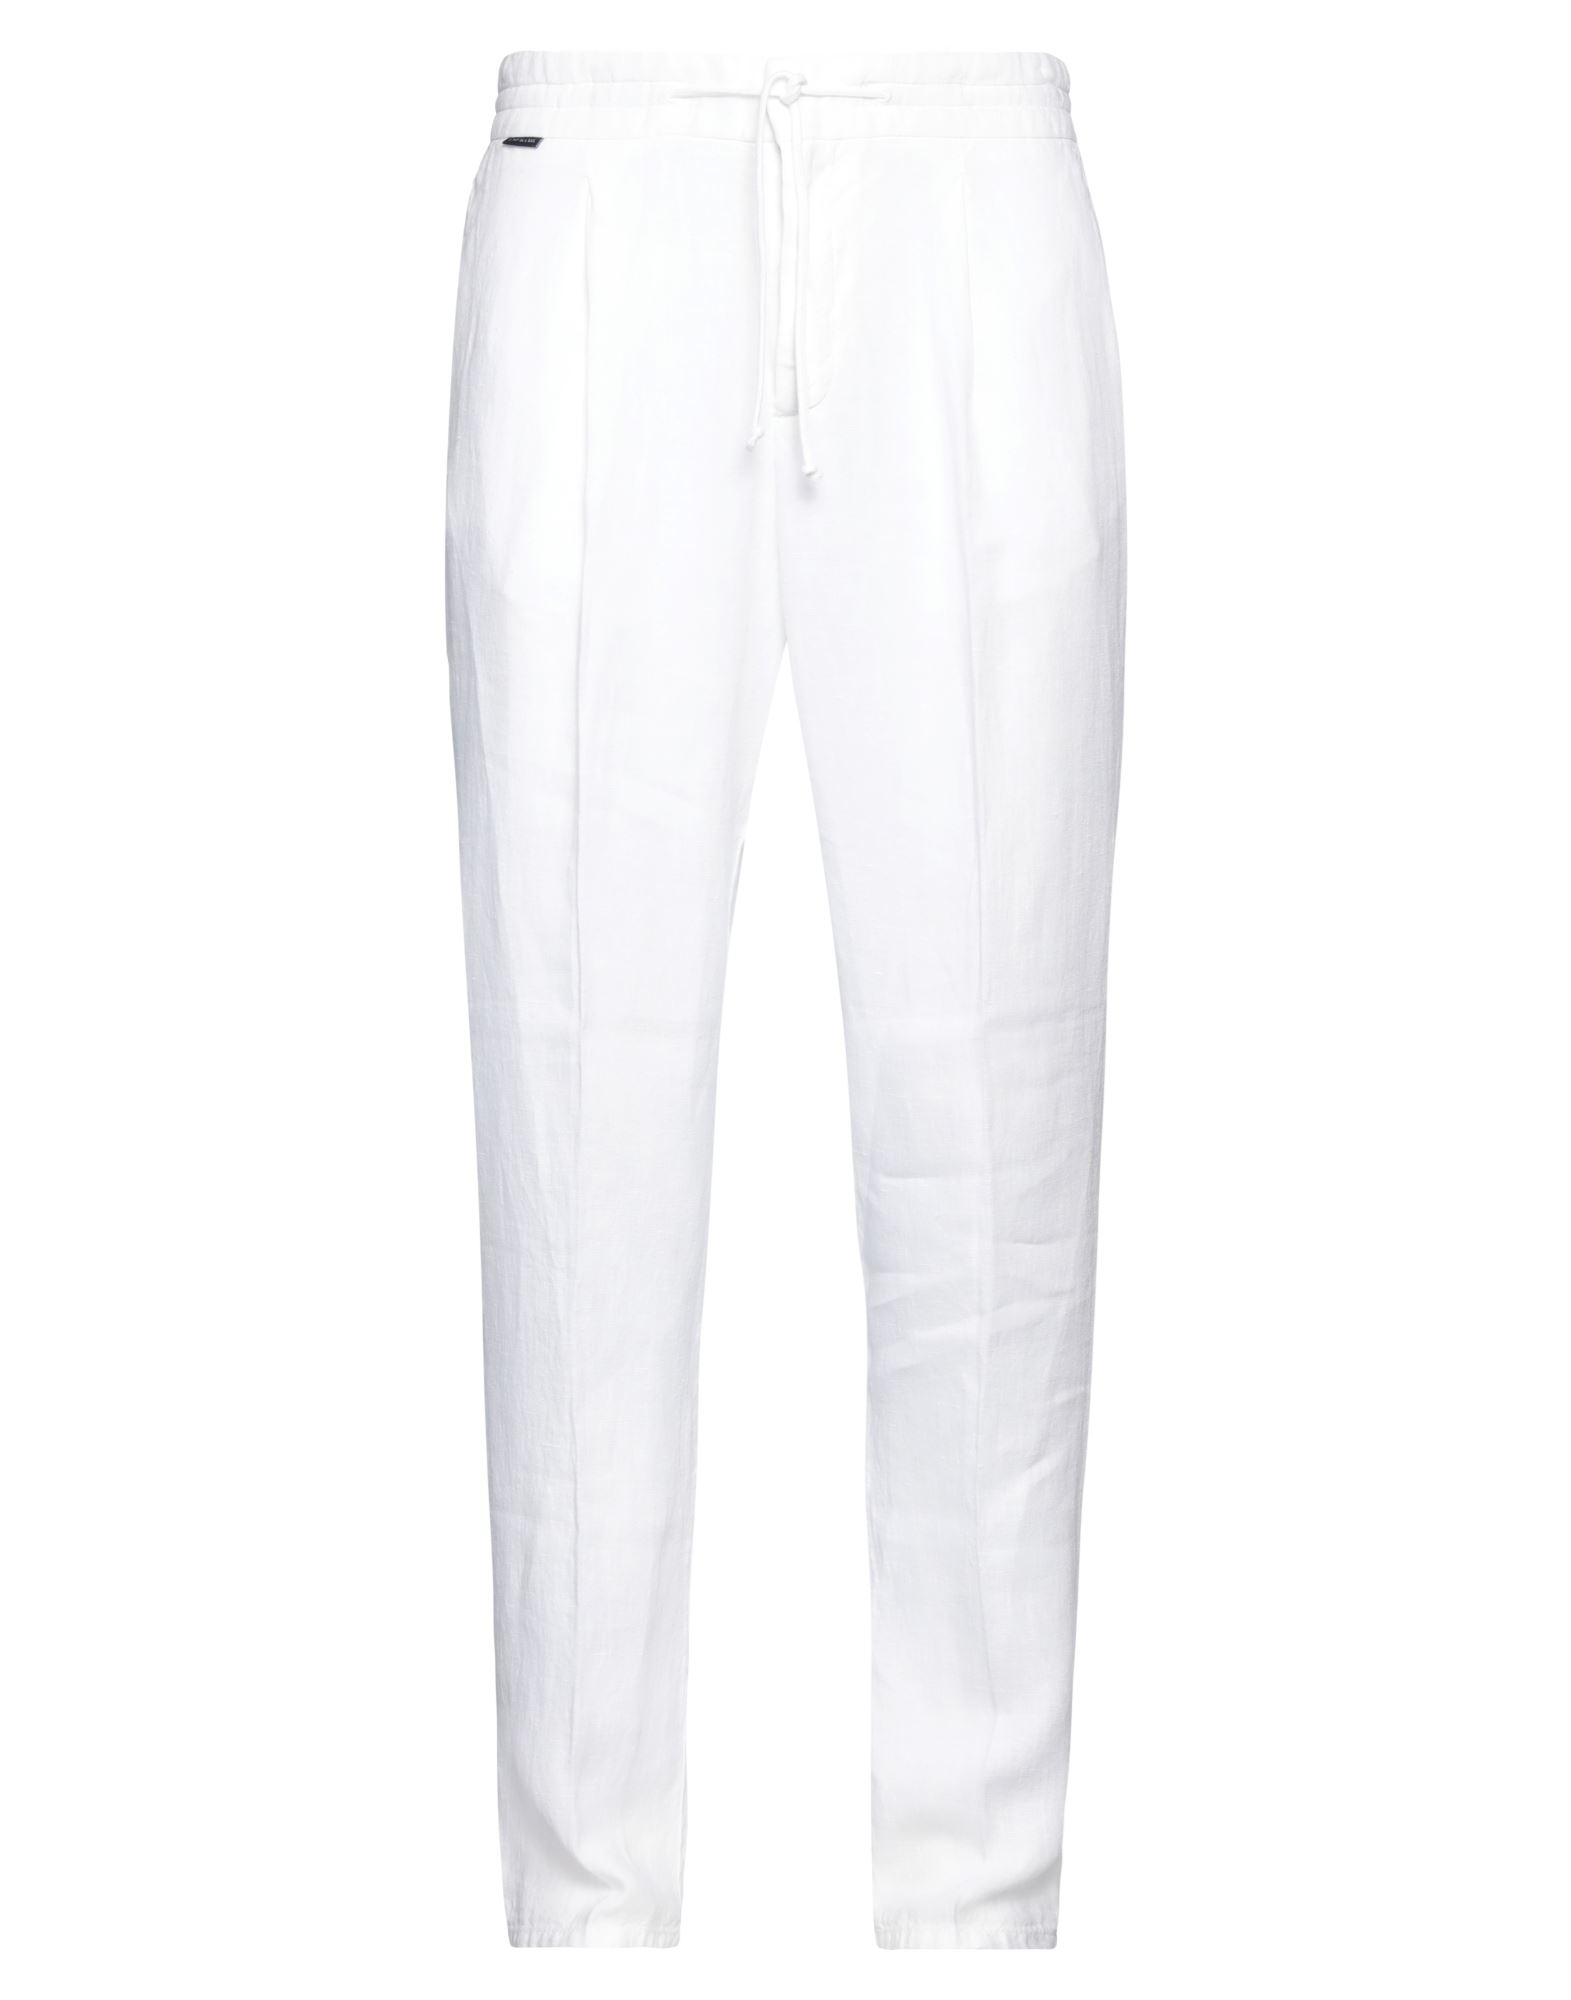 04651/a Trip In A Bag Man Pants White Size L Linen